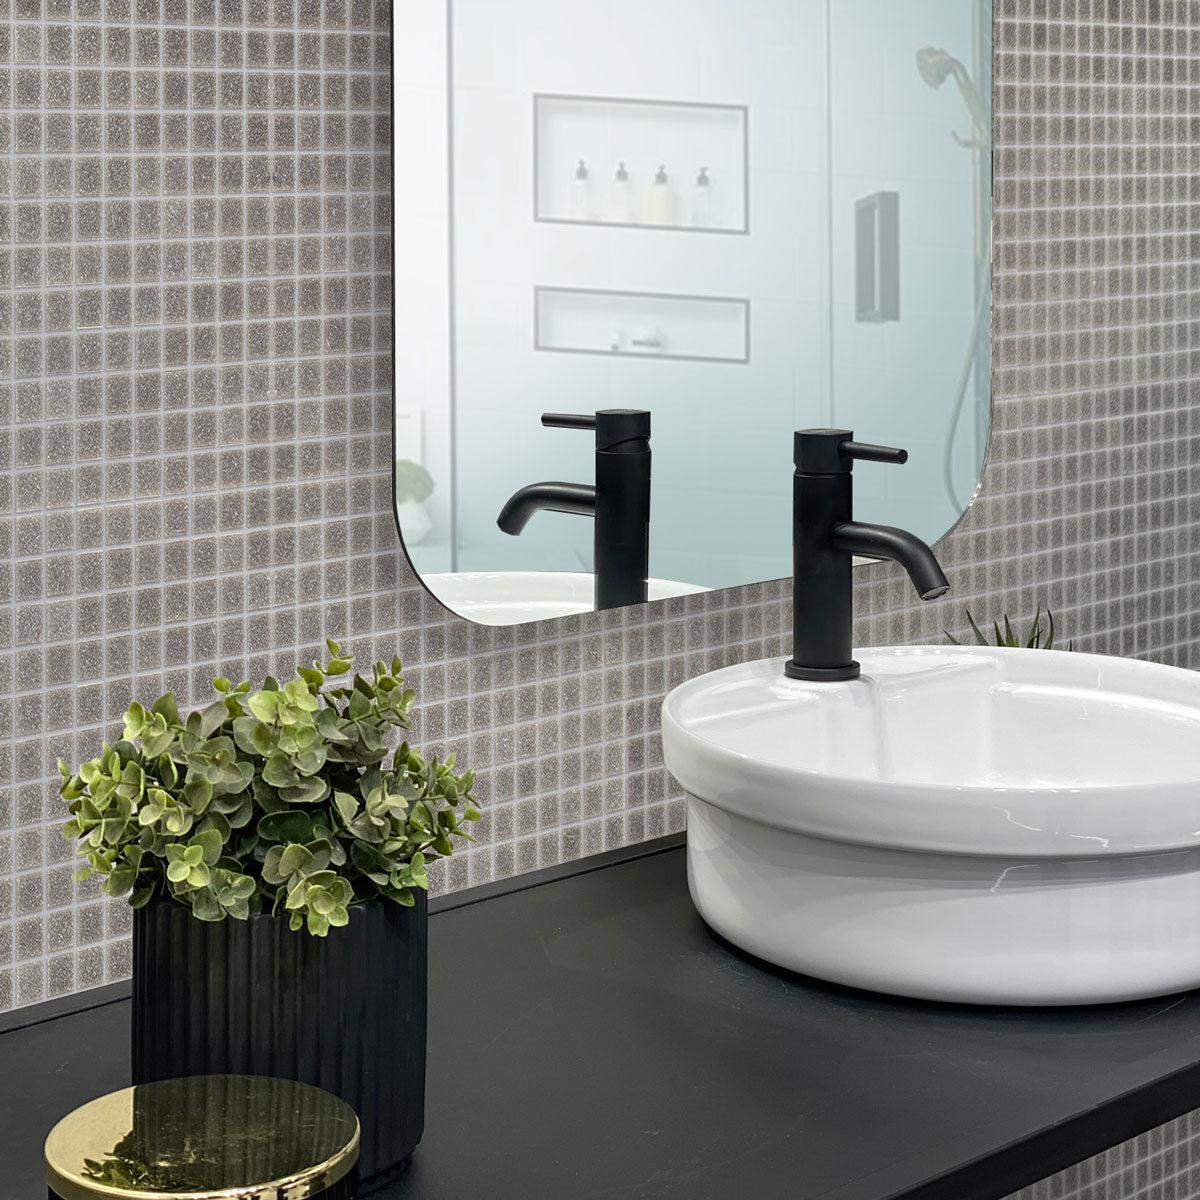 Speckled Pewter Grey Squares Glass Pool Tile Bathroom Backsplash